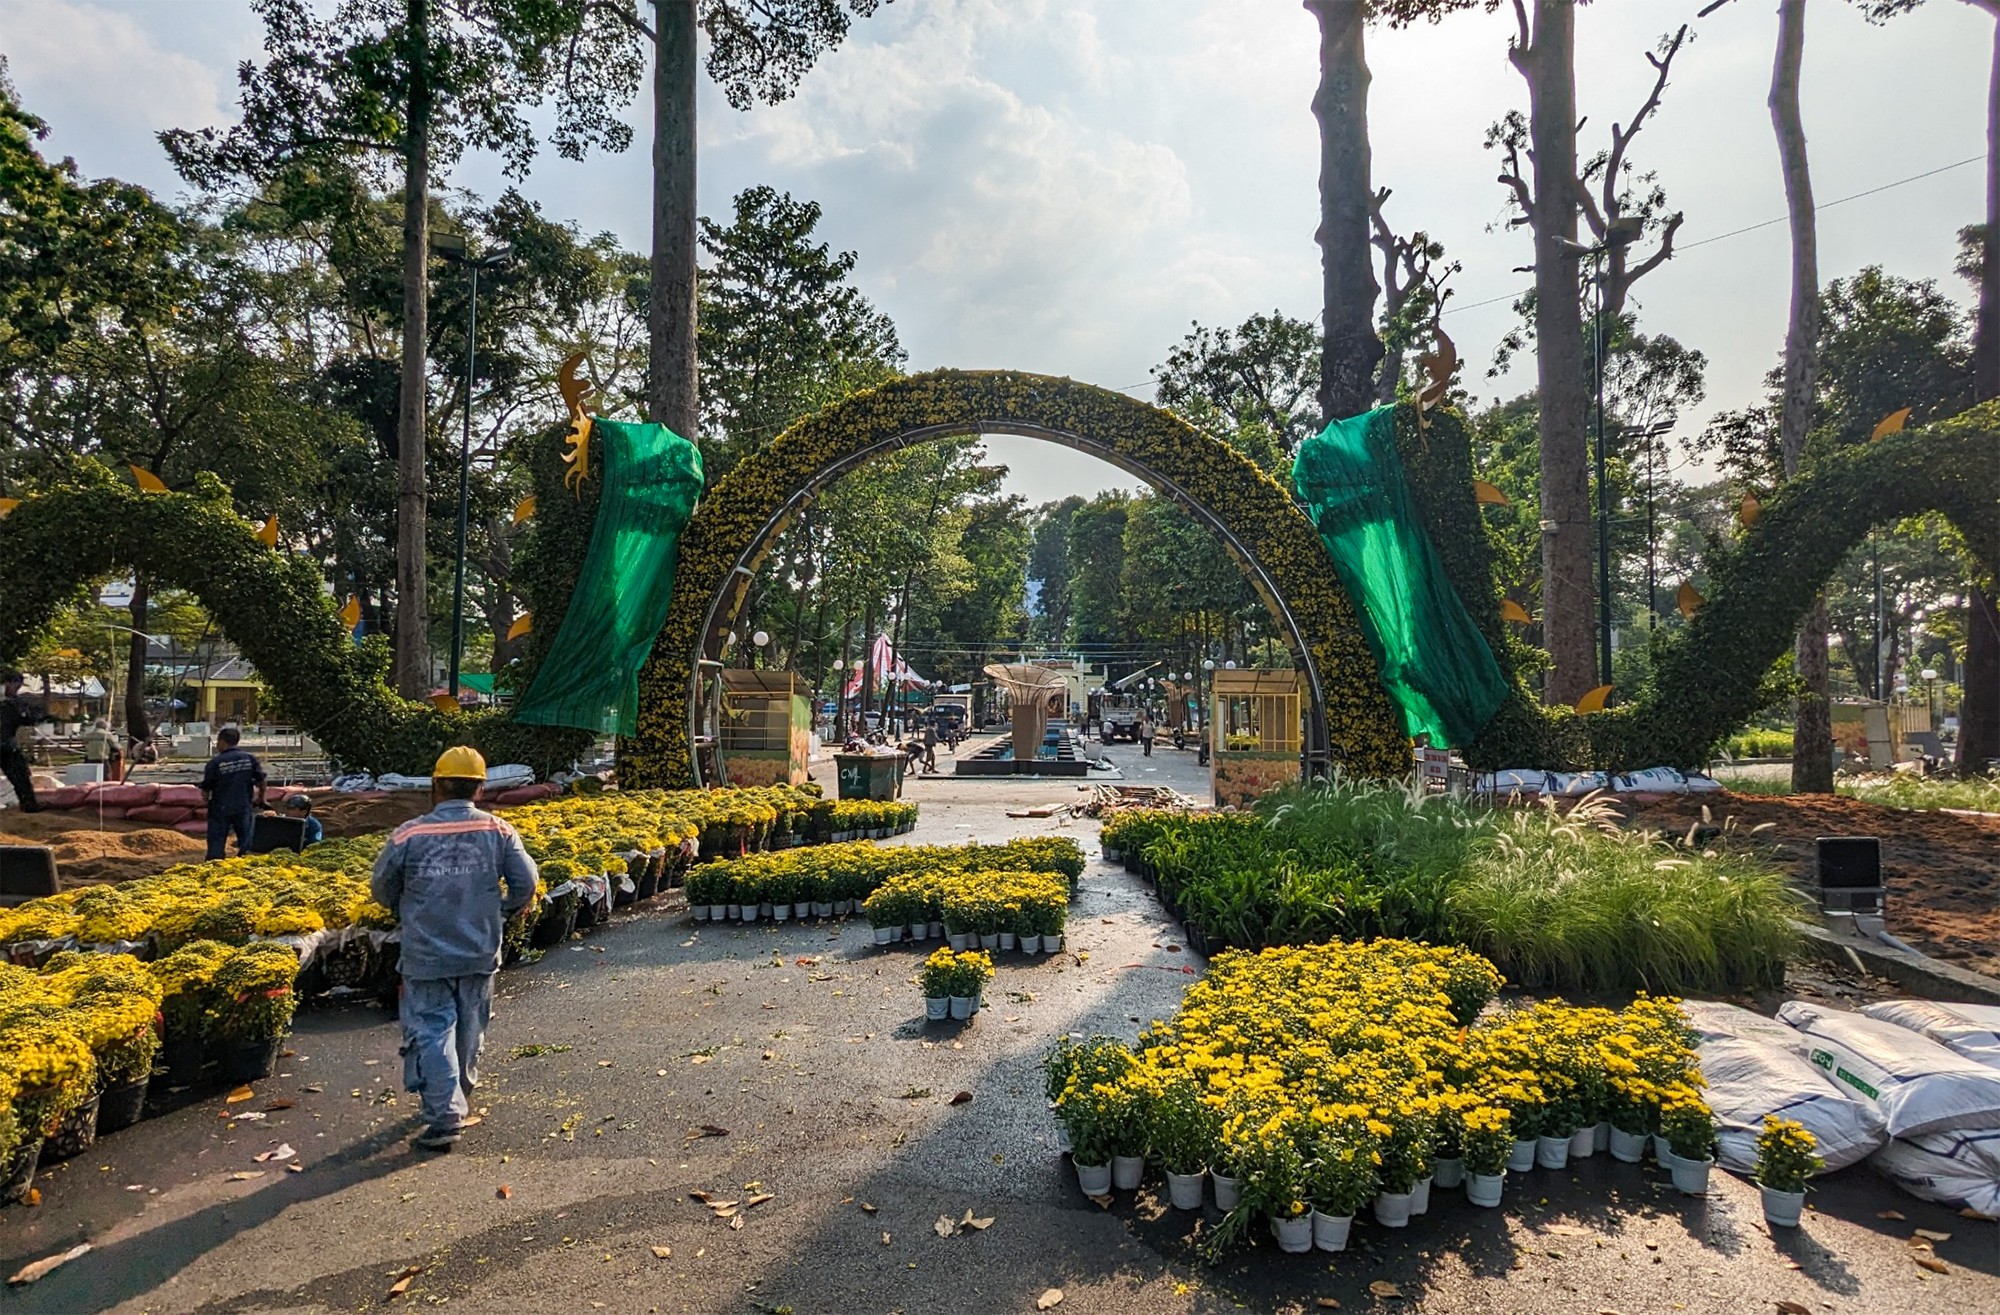 Những ngày qua, cặp linh vật rồng bằng cây xanh tại cổng chào Hội hoa xuân trong Công viên Tao Đàn, quận 1 cũng thu hút quan tâm của nhiều người. Được biết, linh vật rồng này được nghệ nhân tạo hình bằng cây sanh nuôi trong 2 năm.